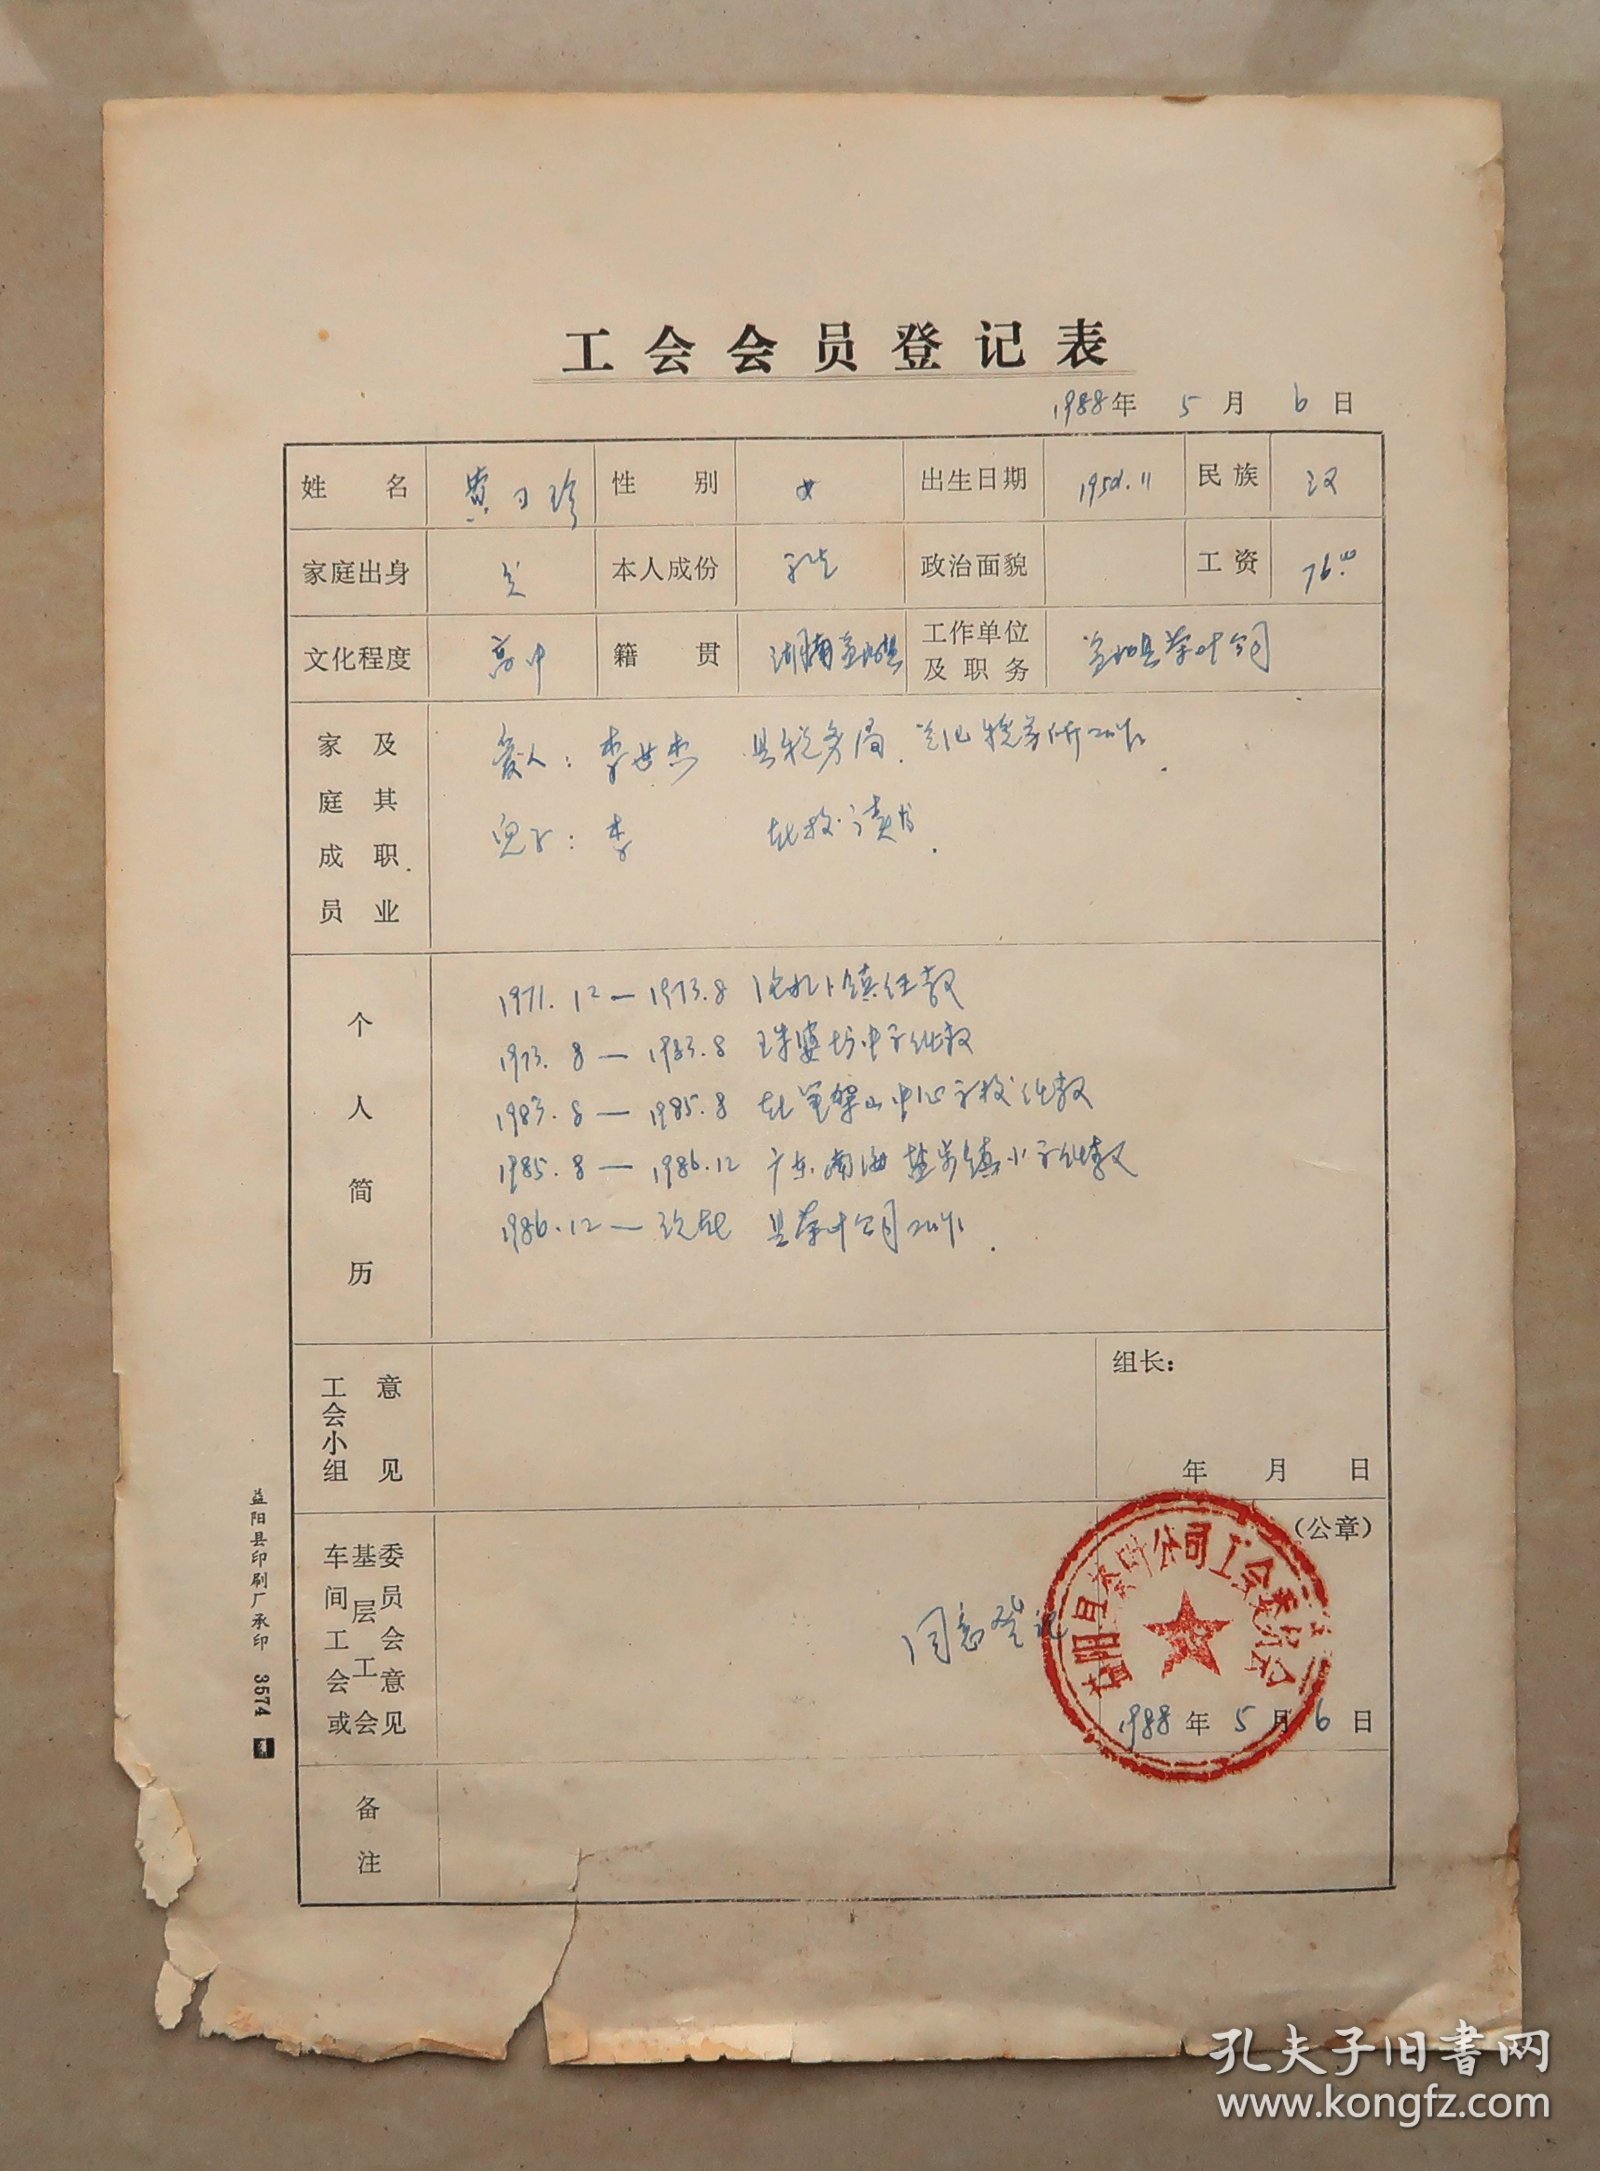 益阳县茶叶公司  工会会员组织关系介绍信   1986年  工会会员登记表  1988年  二表同一人